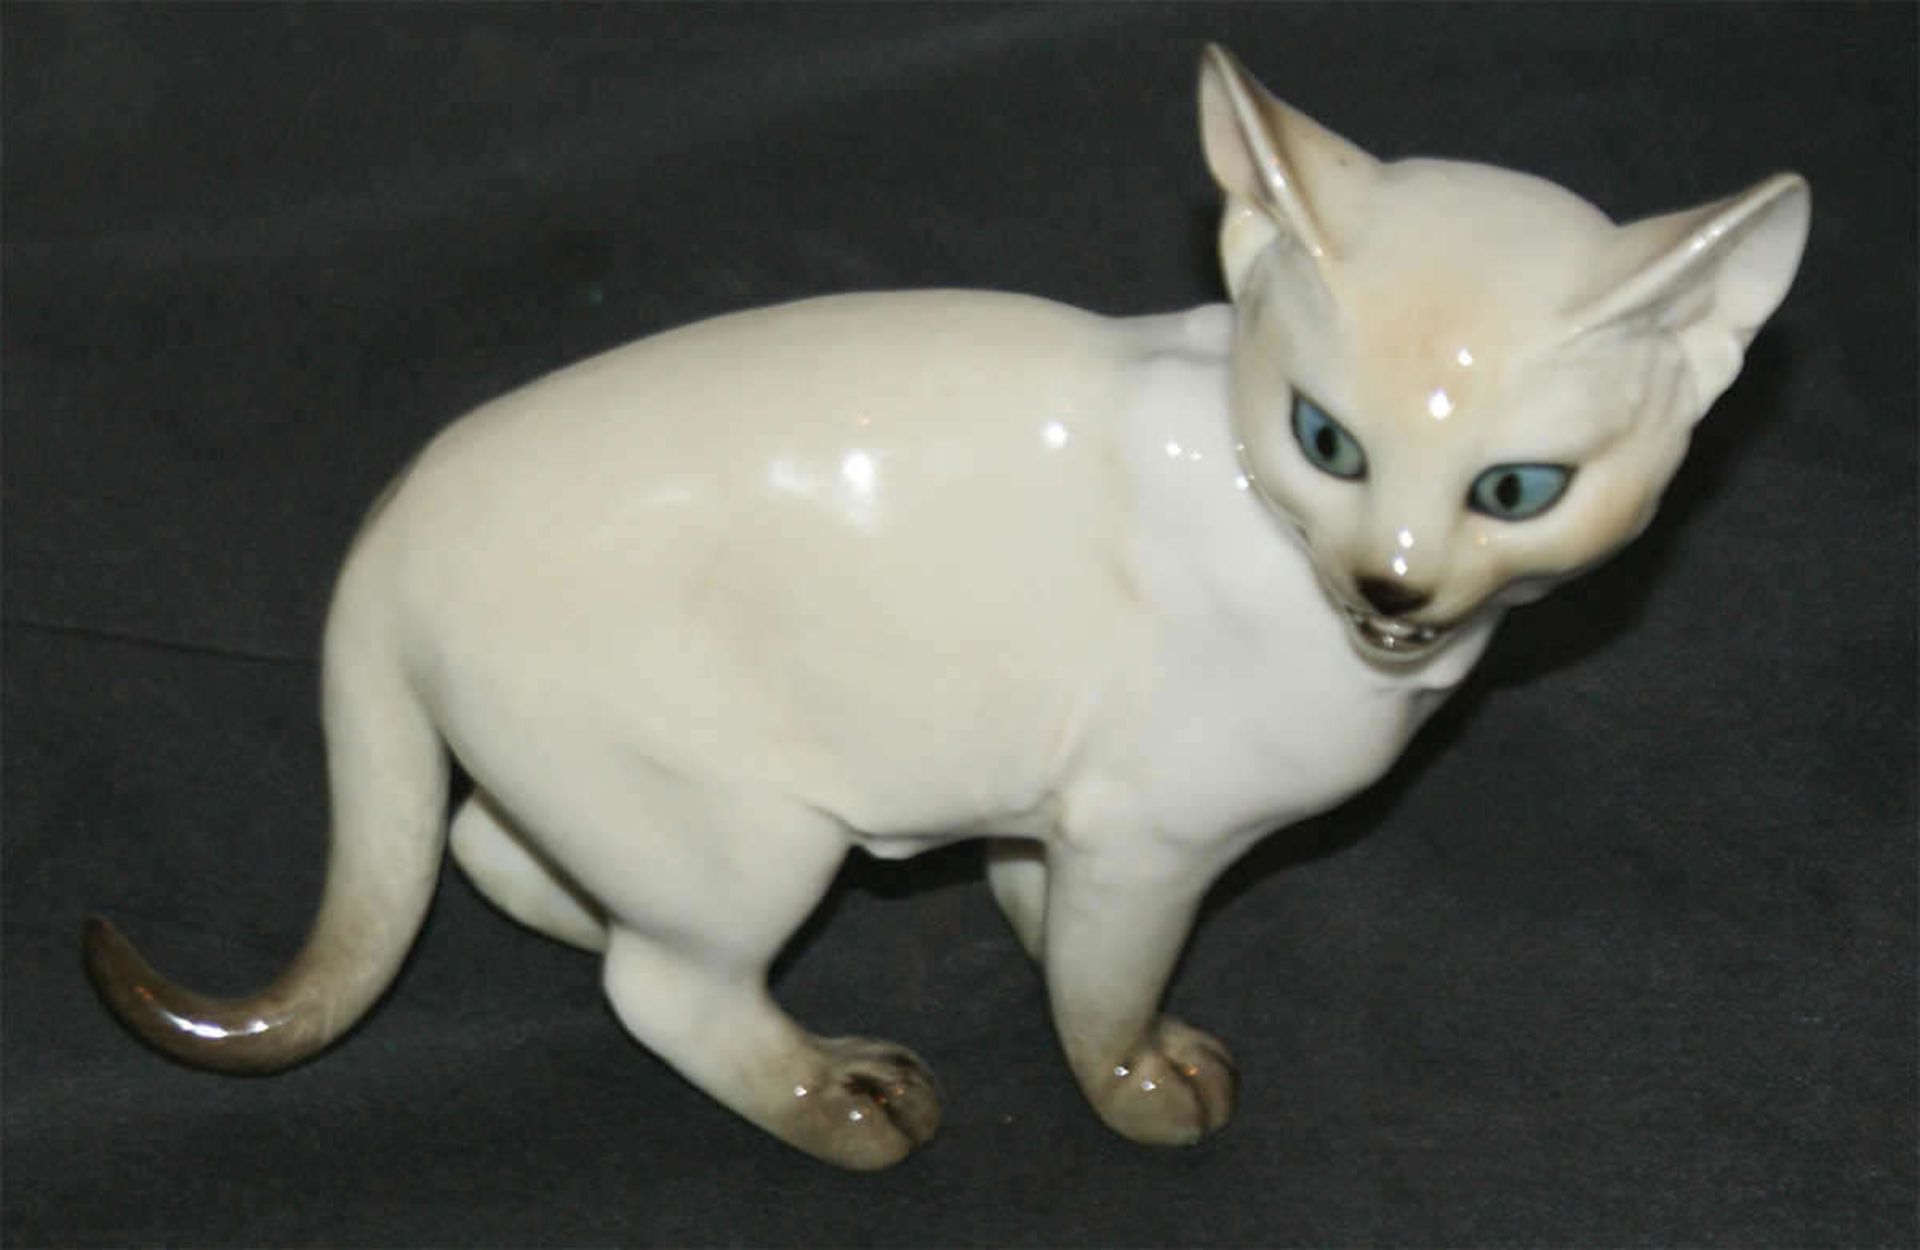 Hutschenreuther Porzellanfigur "Siamkatze", gemarkt mit Hutschenreuther Löwe und Germany. Mit 1